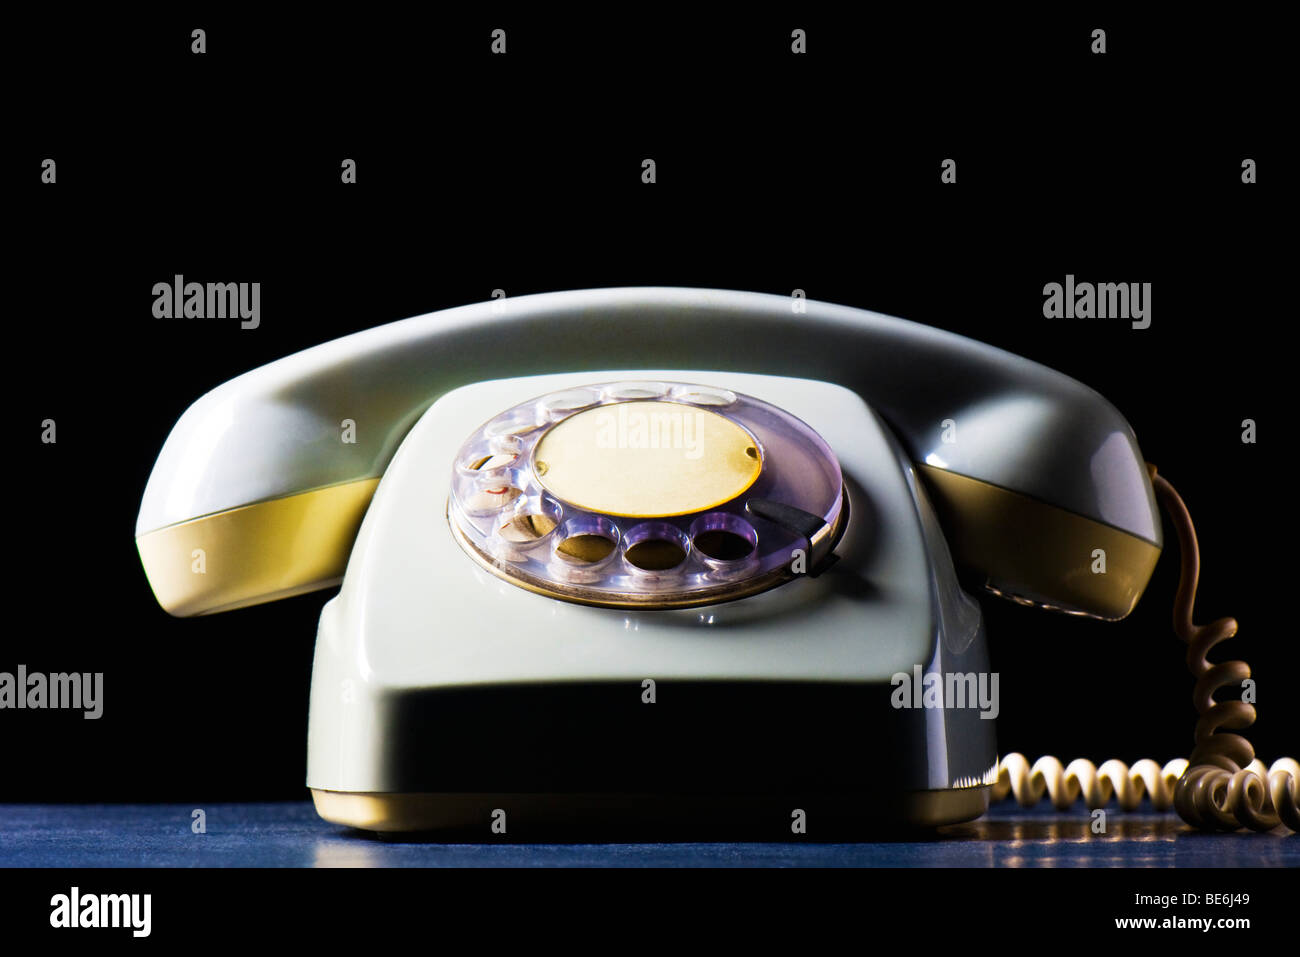 Rotary telephone, still life Stock Photo